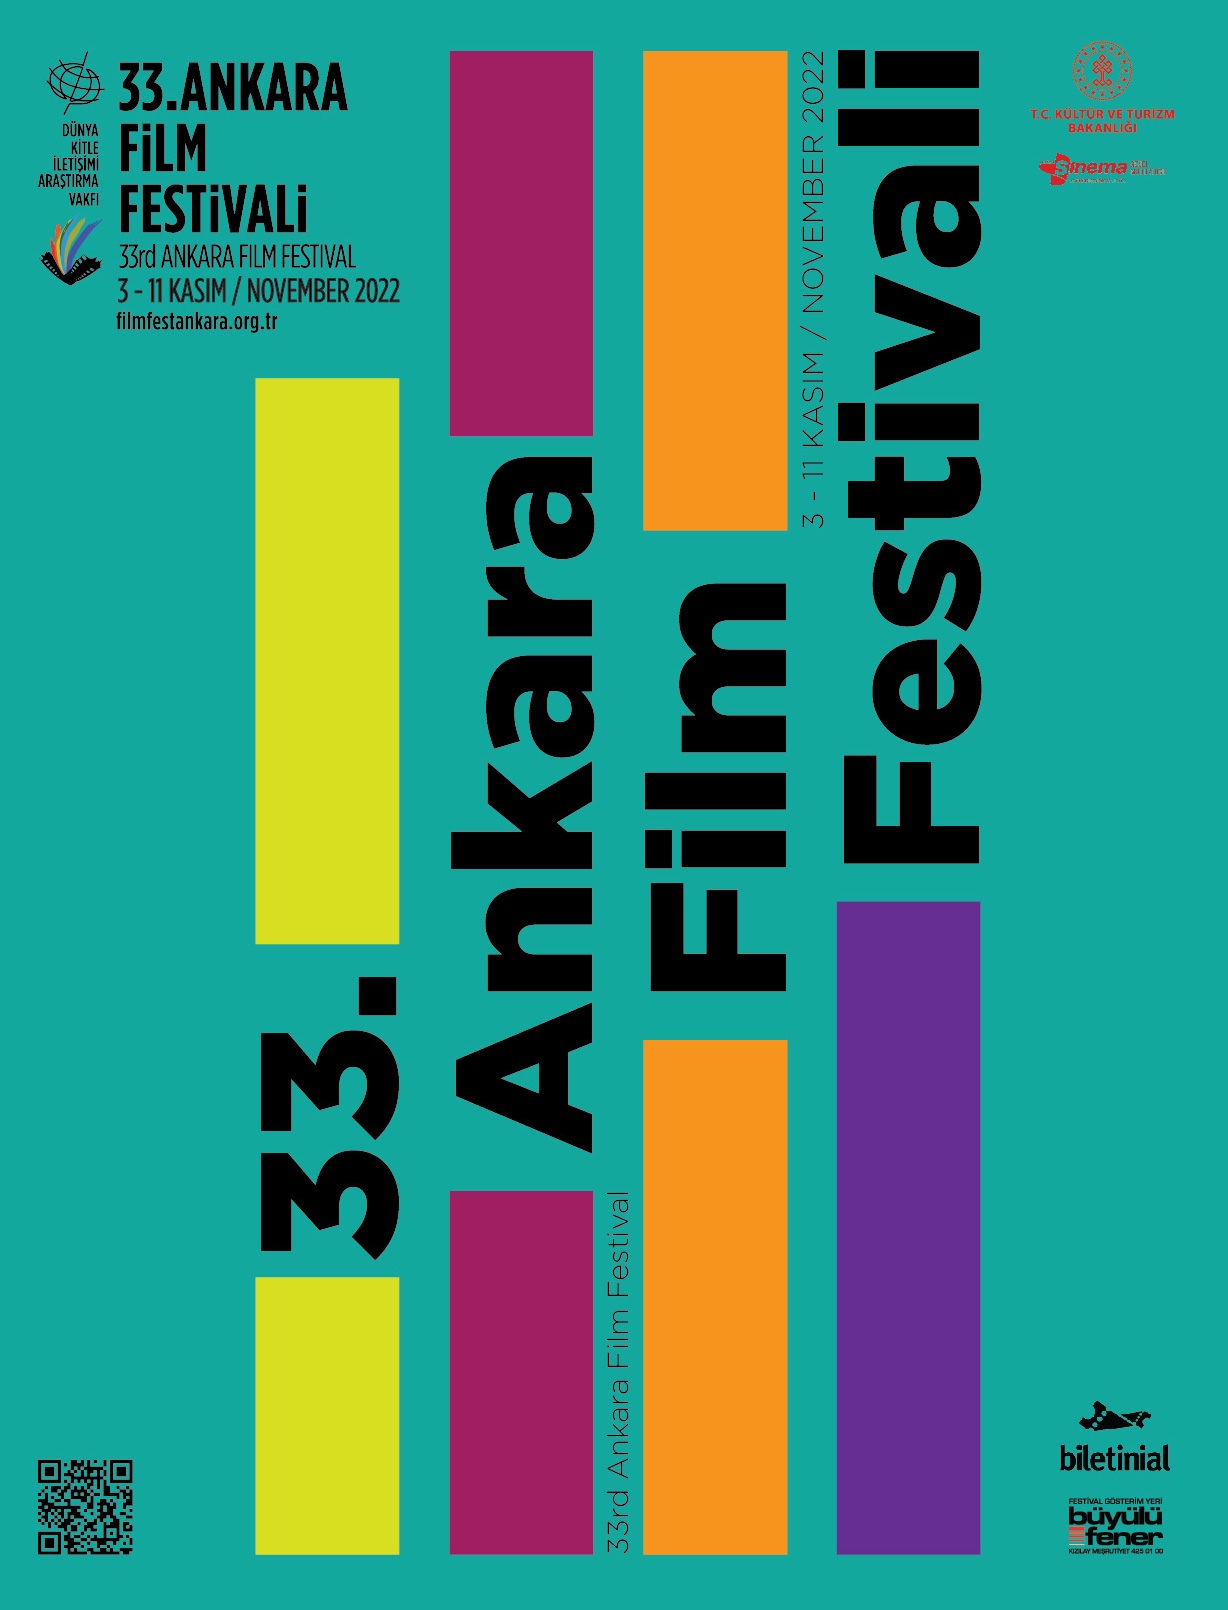 33. Ankara Film Festivali Festivali’nde Heyecan Sürüyor